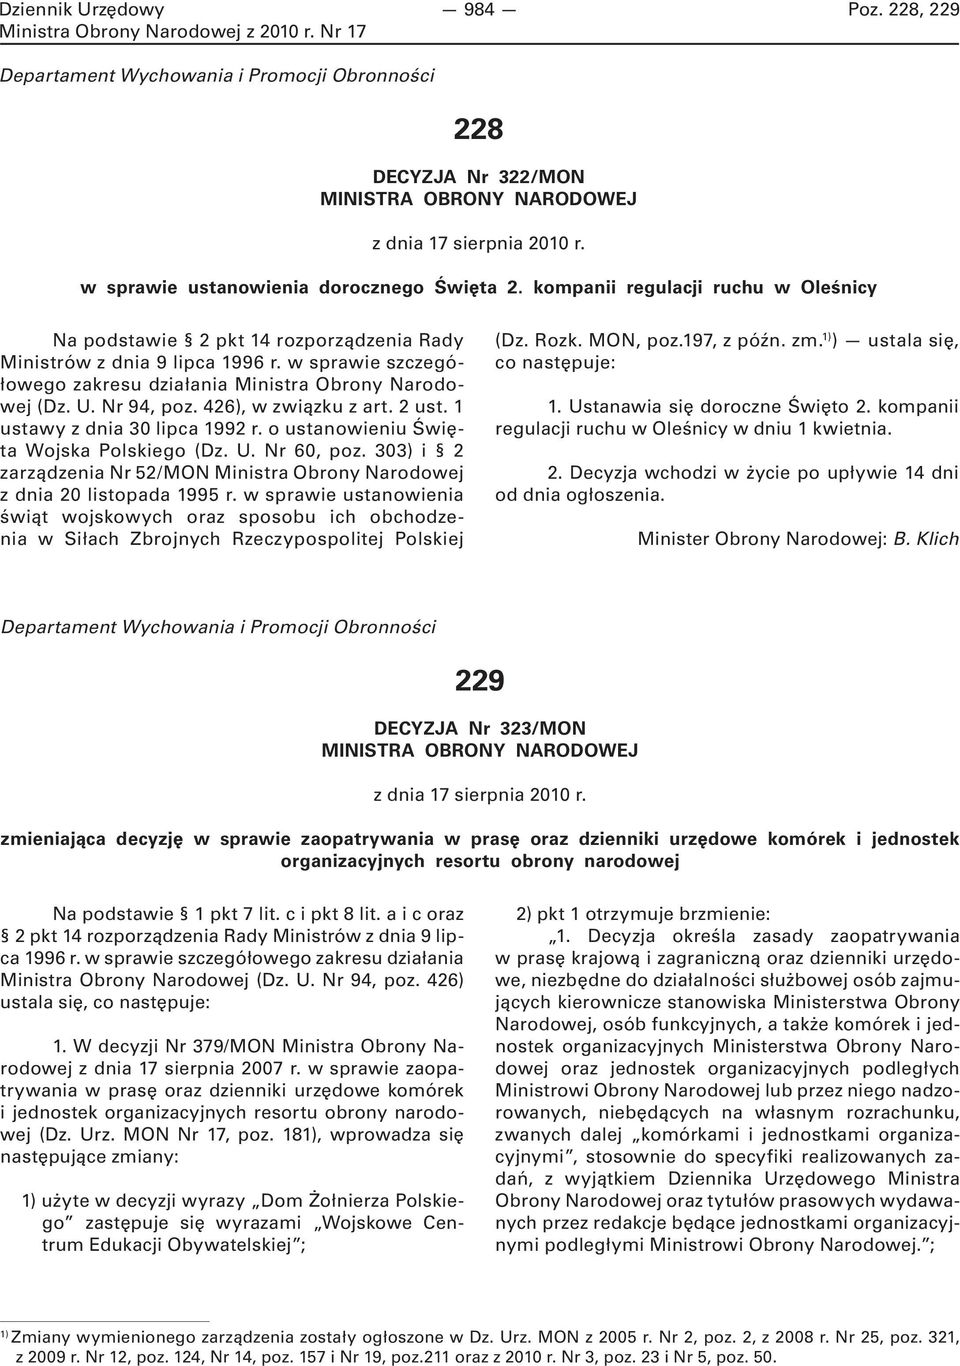 426), w związku z art. 2 ust. 1 ustawy z dnia 30 lipca 1992 r. o ustanowieniu Święta Wojska Polskiego (Dz. U. Nr 60, poz.